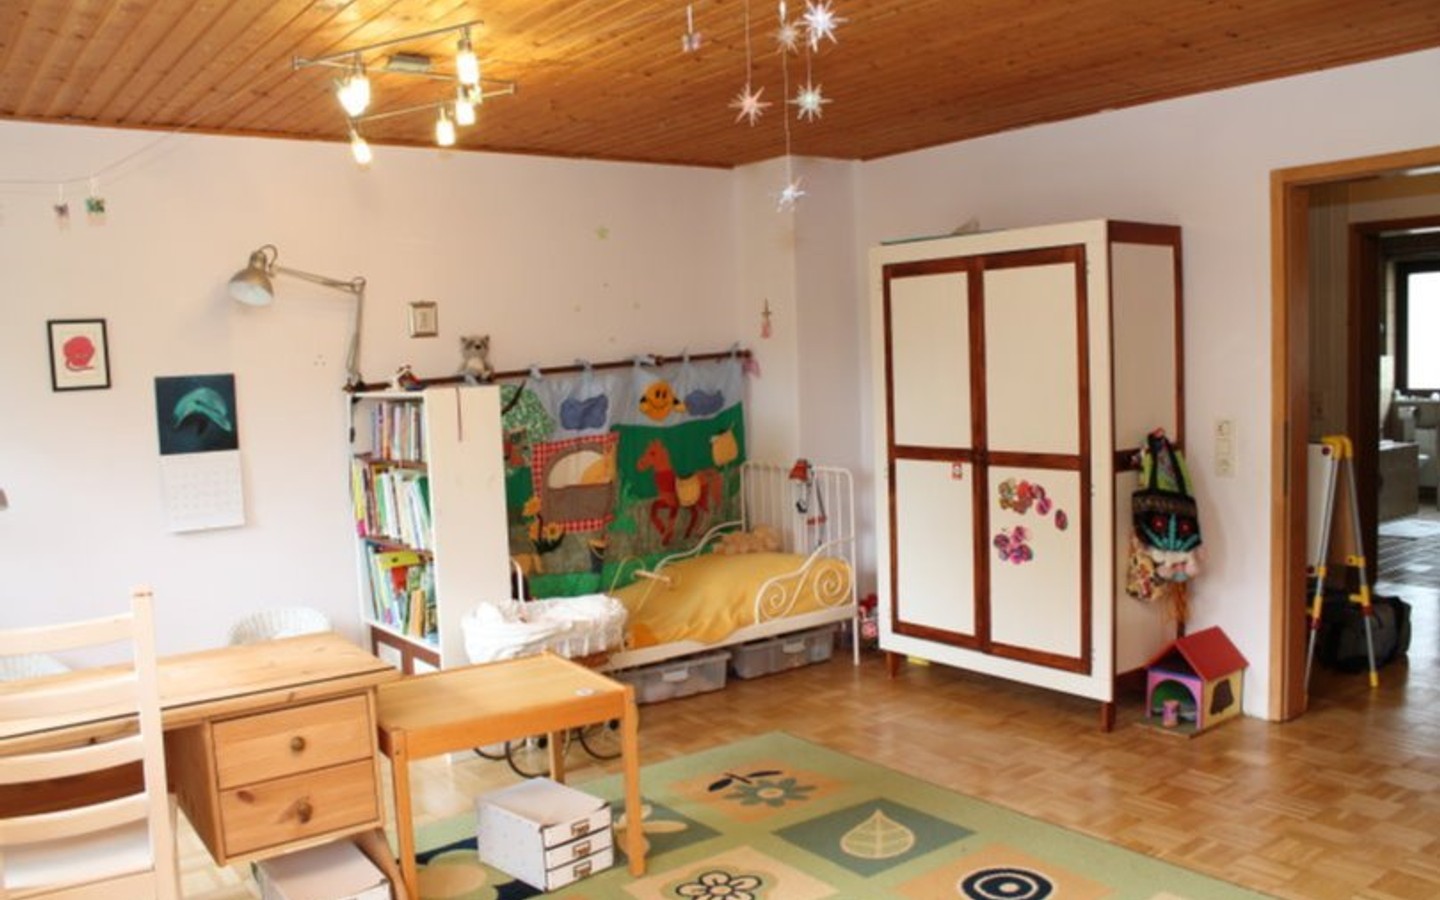 Kinderzimmer rechte Seite - Viel Platz für die Familie ! HD-Wieblingen (Richard-Kuhn-Str.)